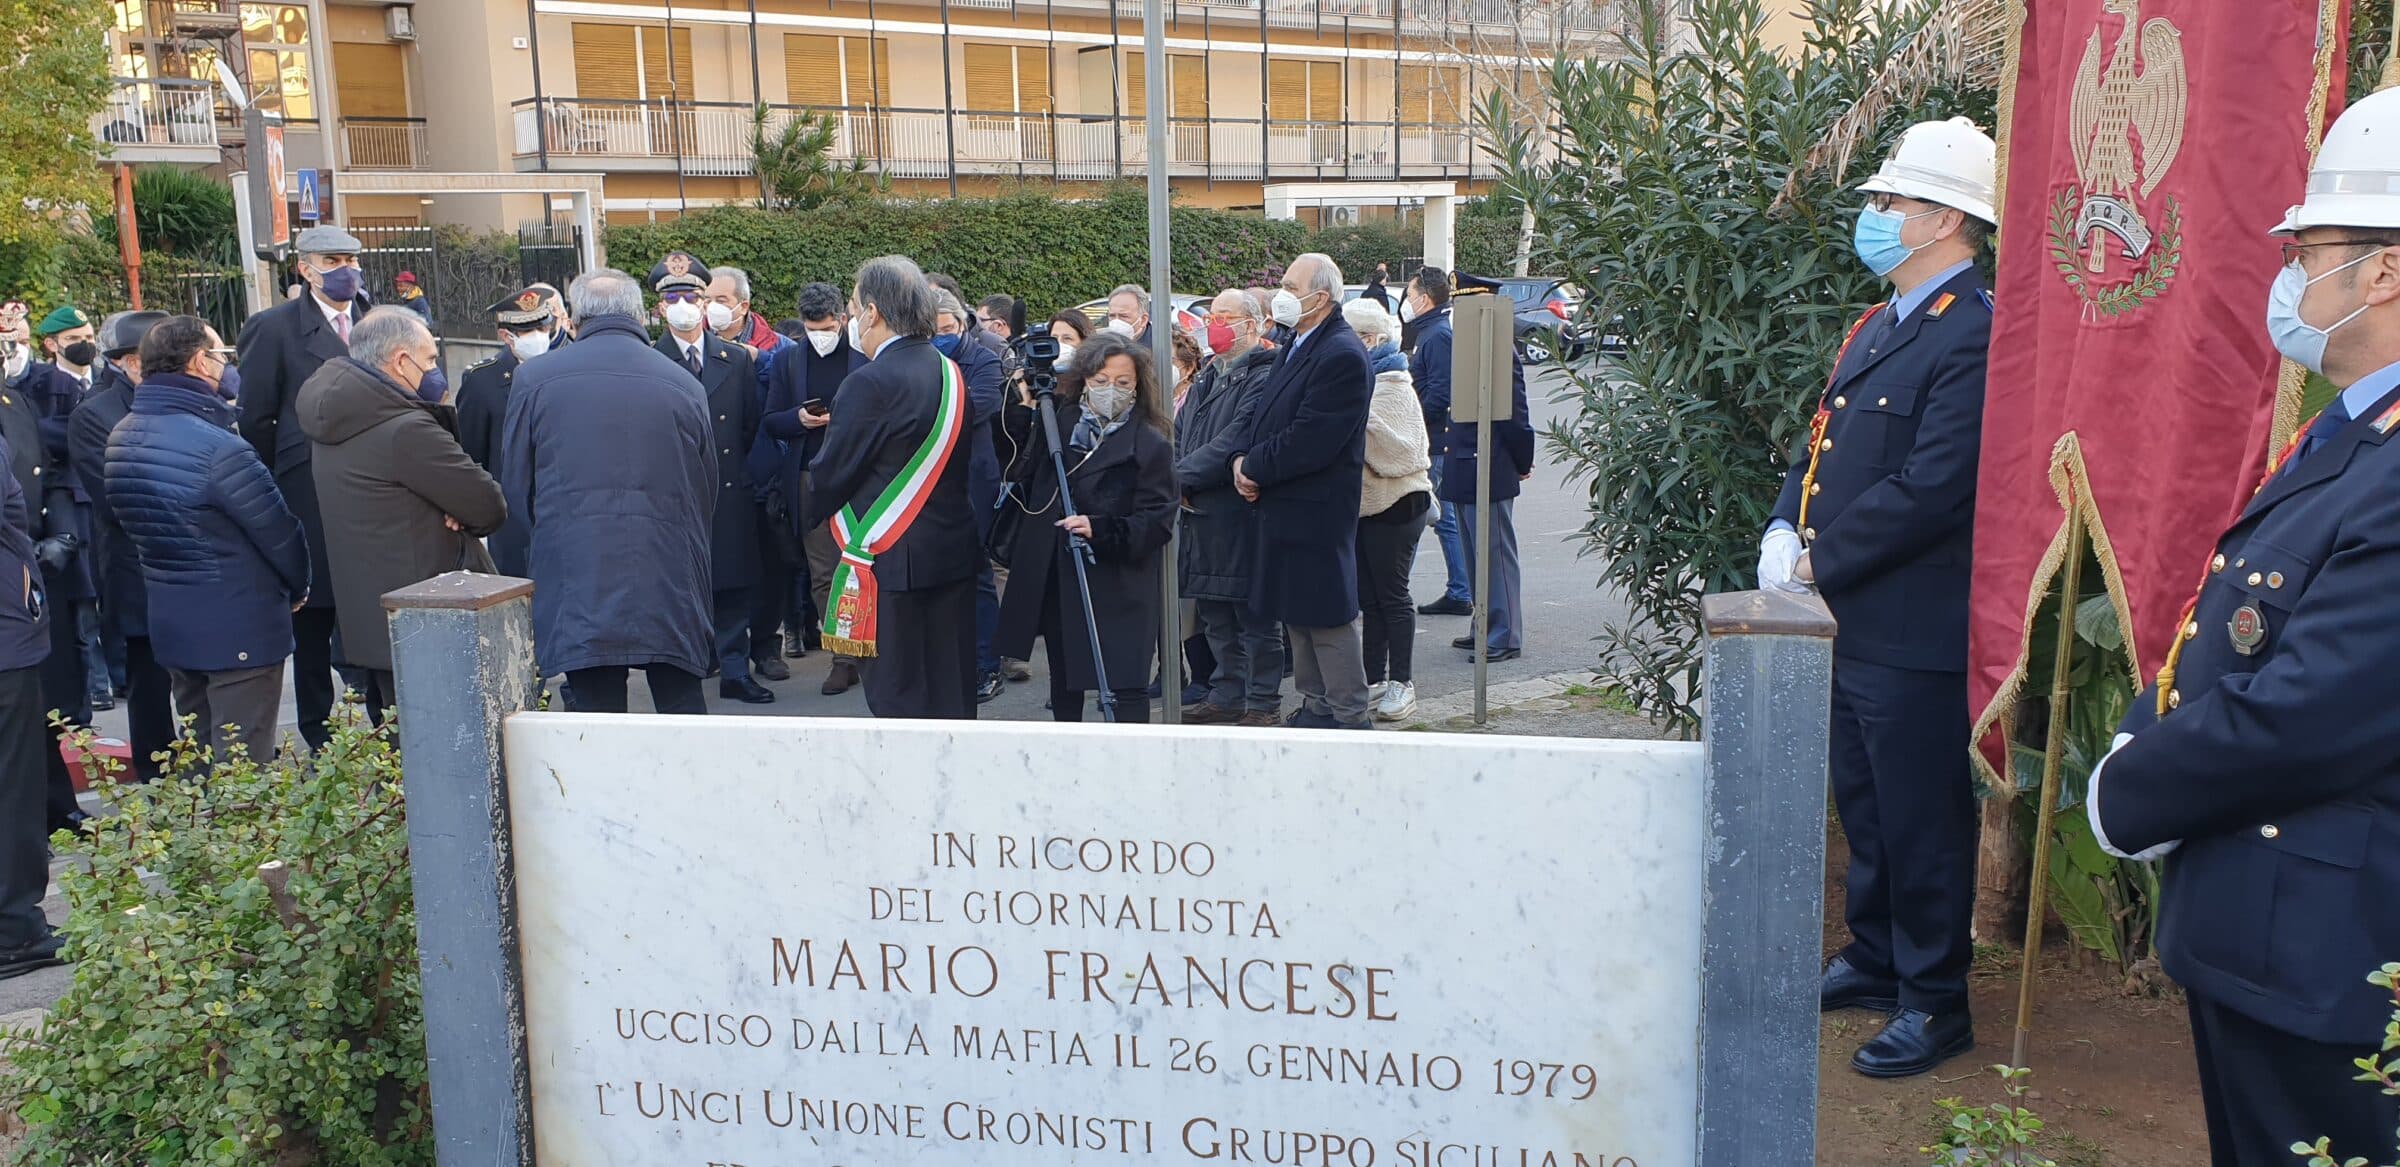 Anniversario Mario Francese, il ricordo del Sindaco Orlando: “La sua lezione è preziosa per Palermo”